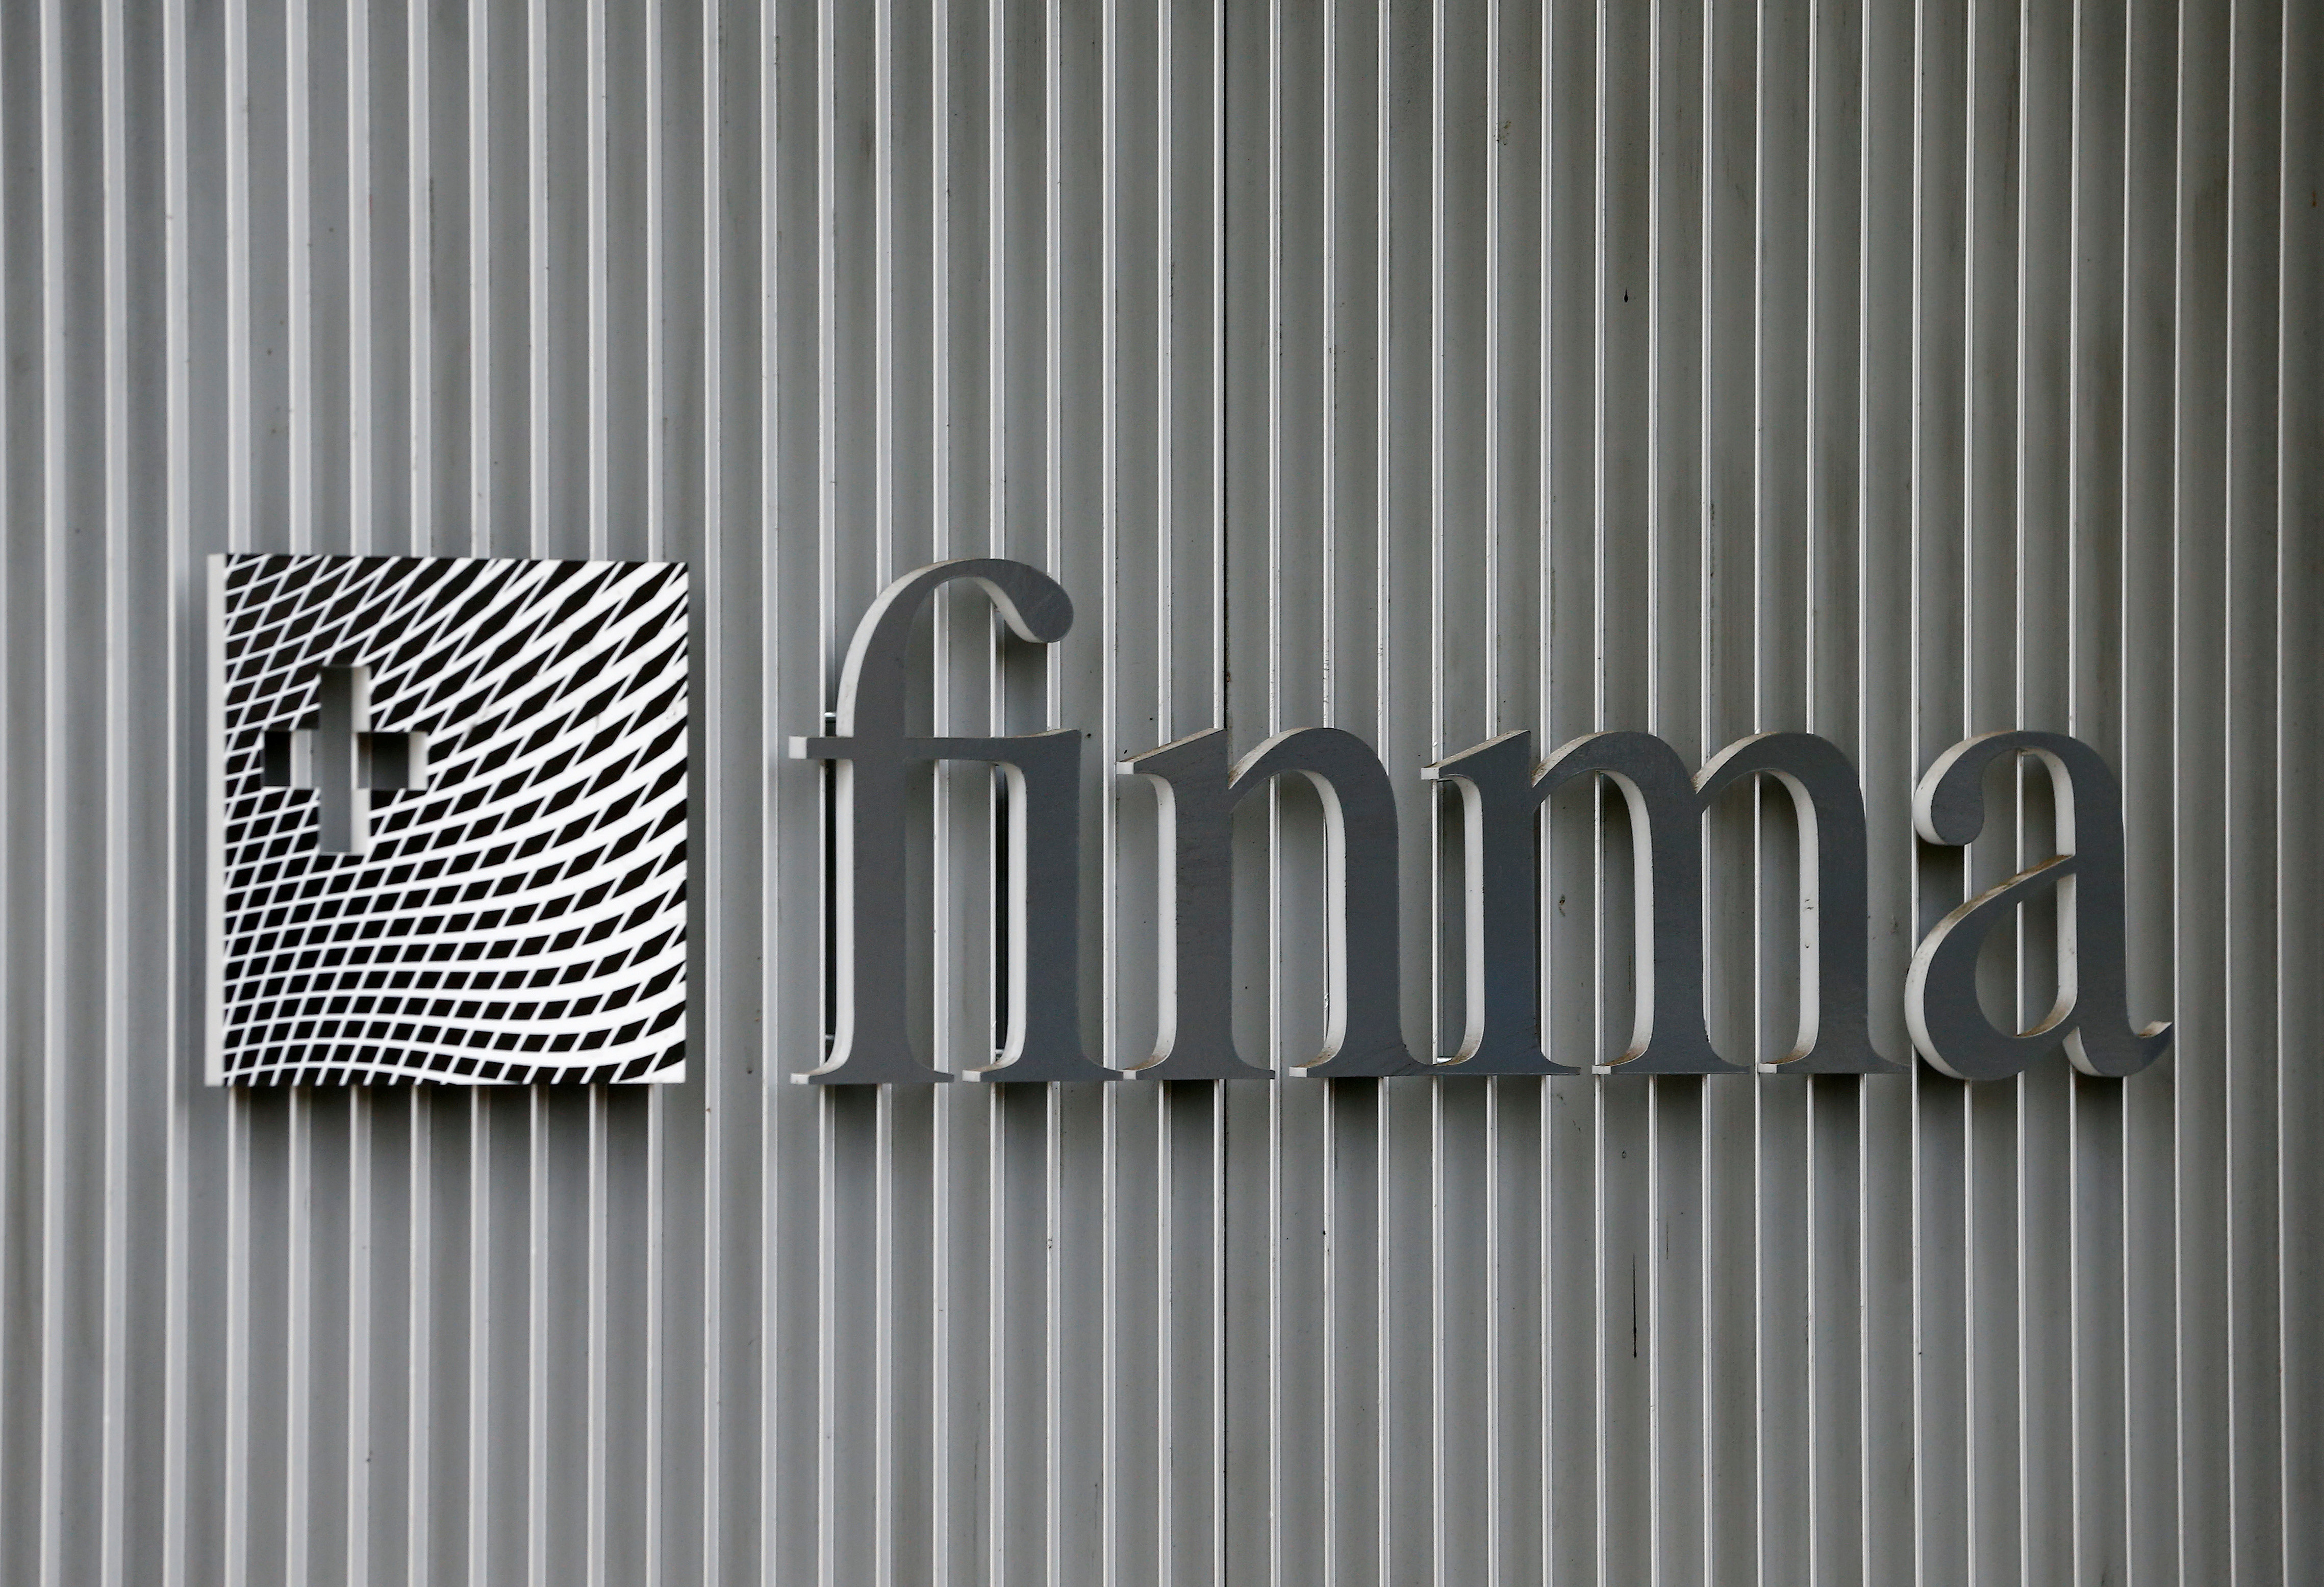 El Credit Suisse le solicitó al BNS y a la Autoridad Suiza de Supervisión del Mercado Financiero (FINMA) que hicieran una declaración firme de apoyo para calmar los mercados. (REUTERS)